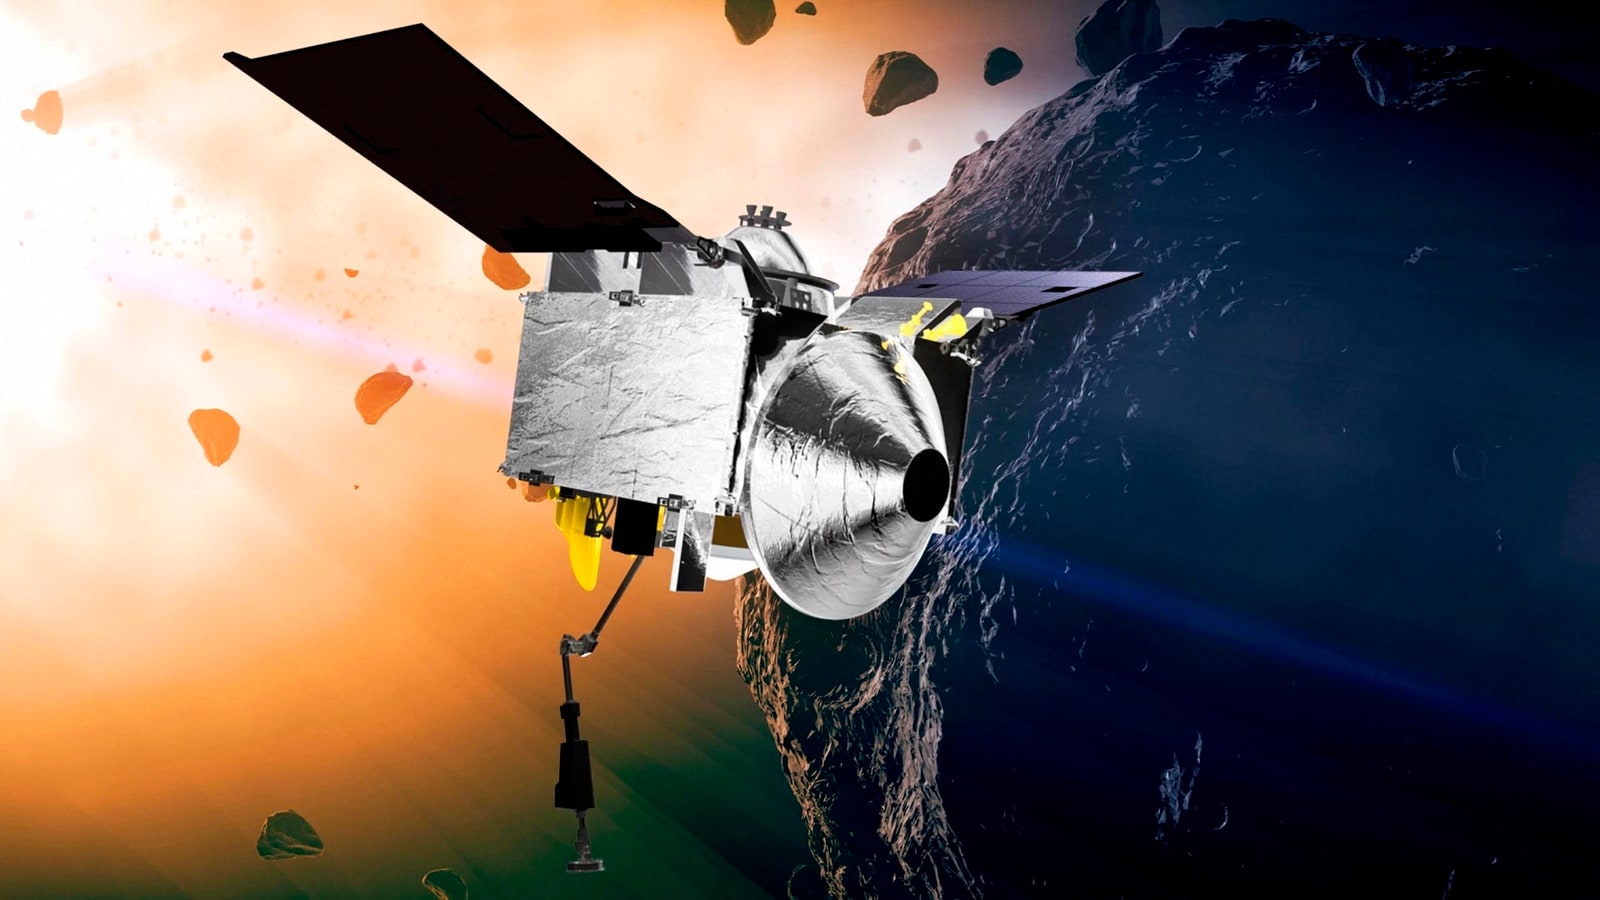 1,614피트 소행성 베누가 지구와 충돌할 것인가?  NASA의 OSIRIS-REx 우주선이 면밀히 관찰하고 있습니다.